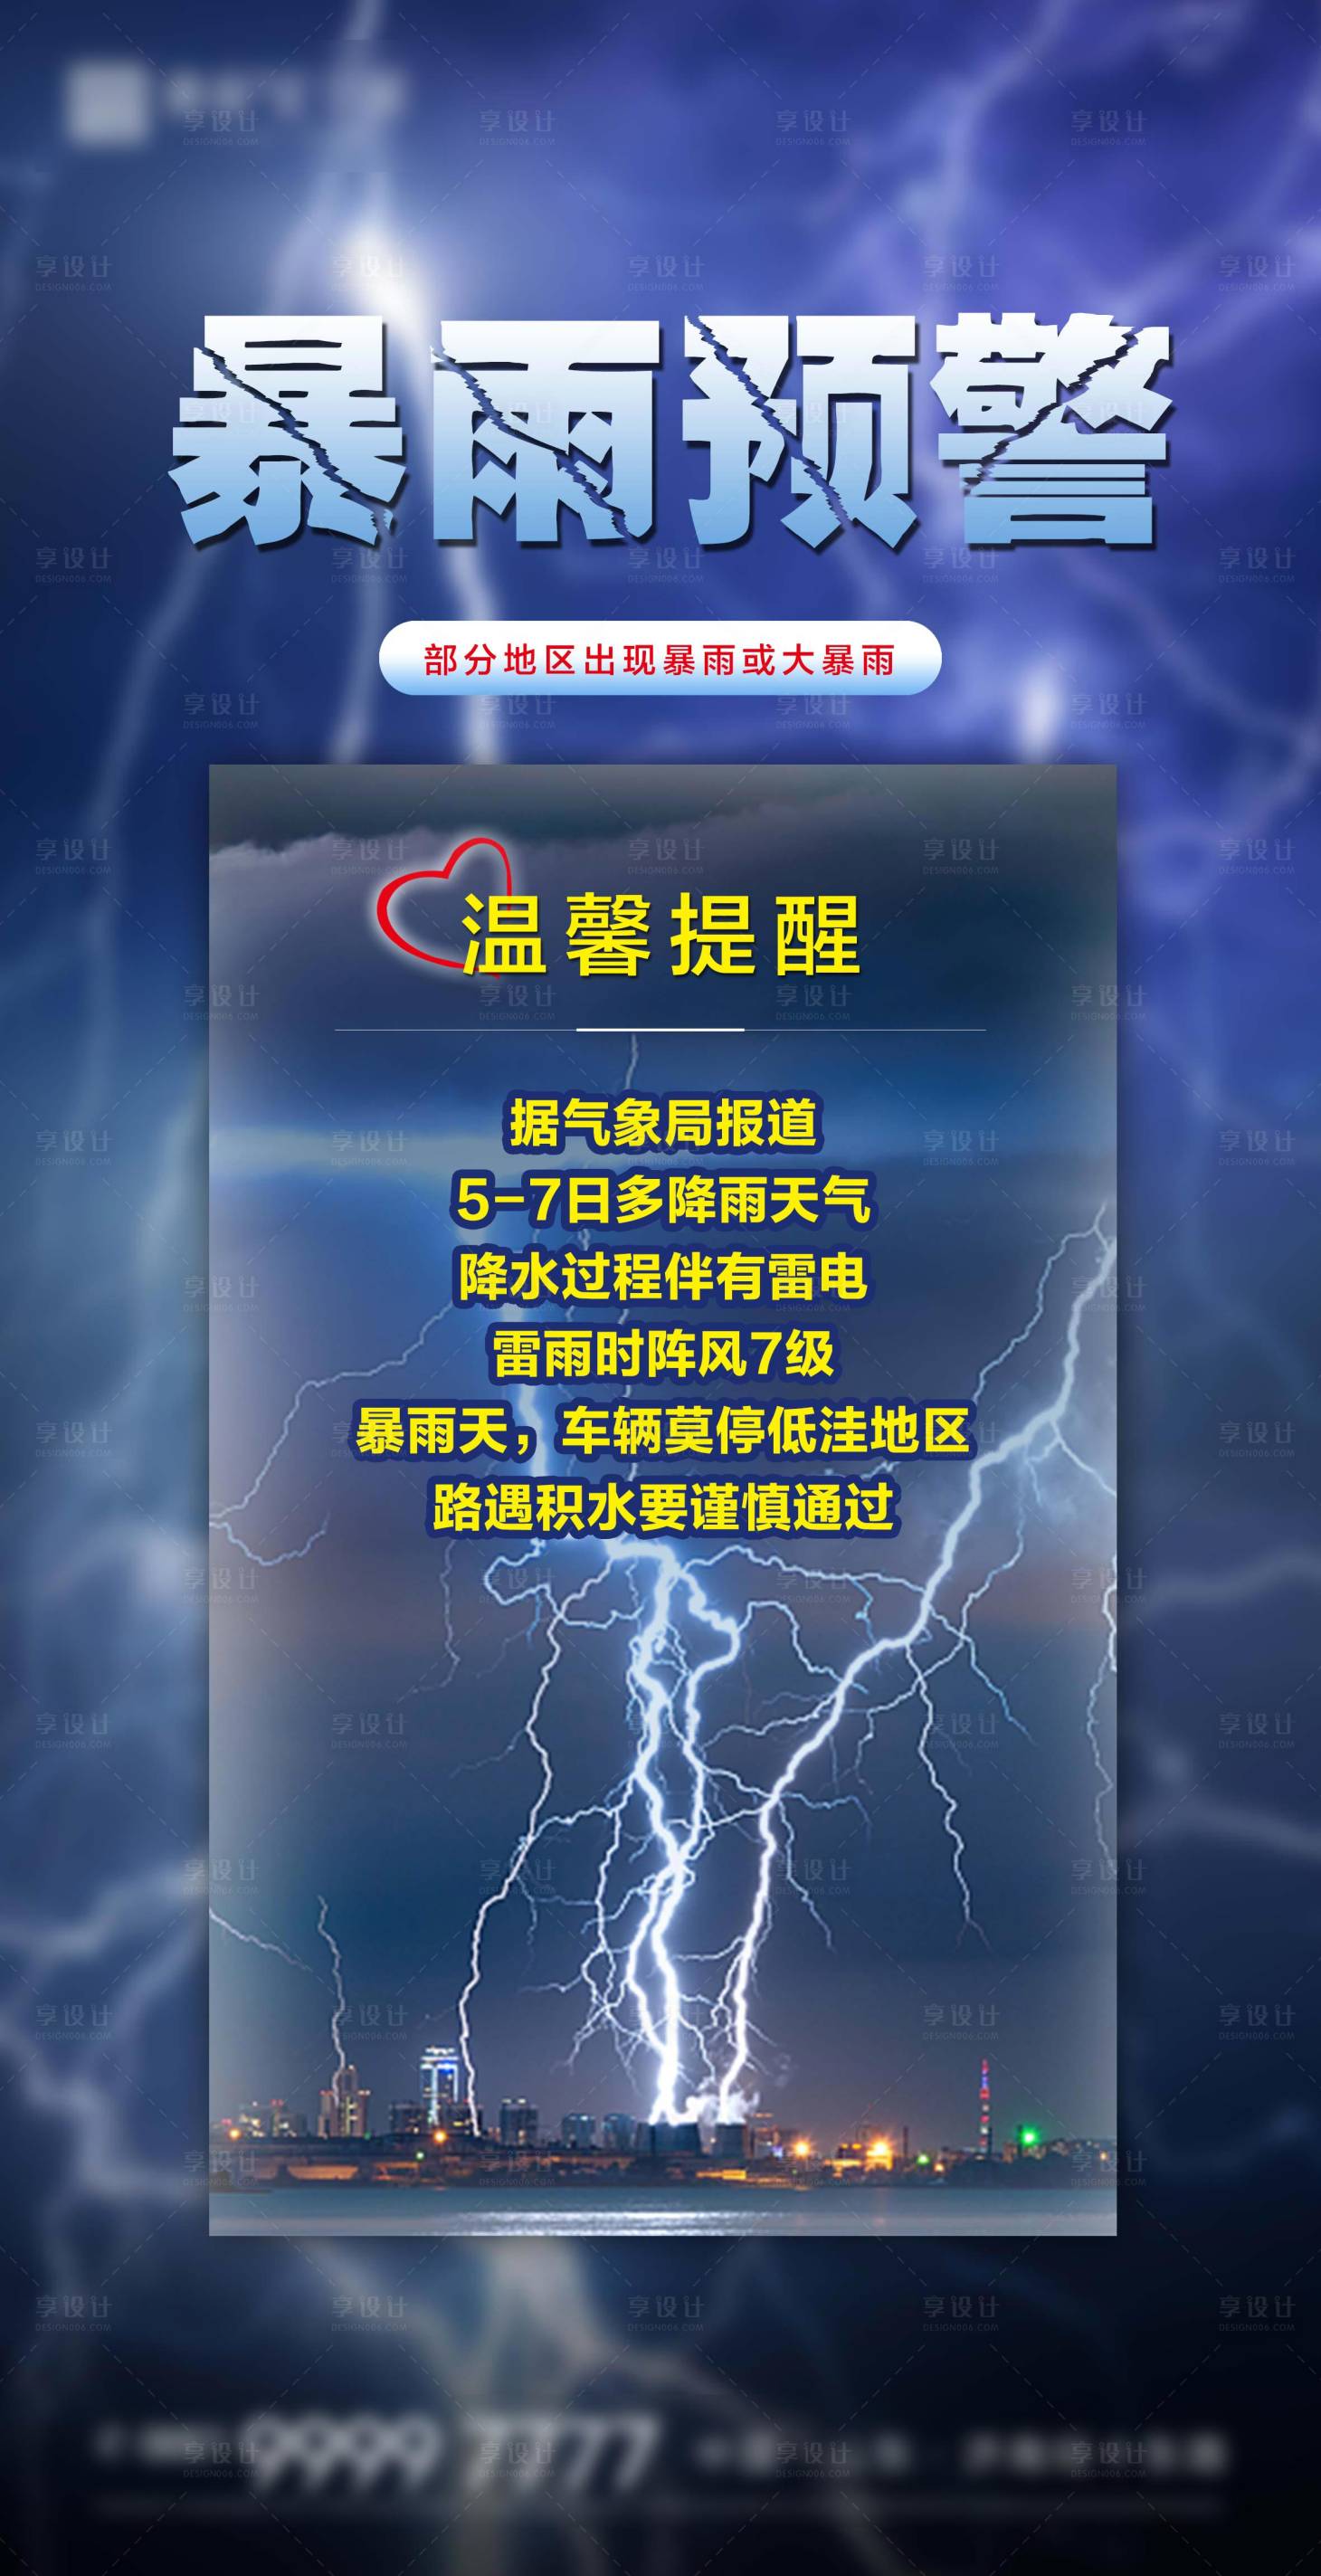 家长注意！记牢这4种气象预警信号，深圳任一区域预警就全市停课